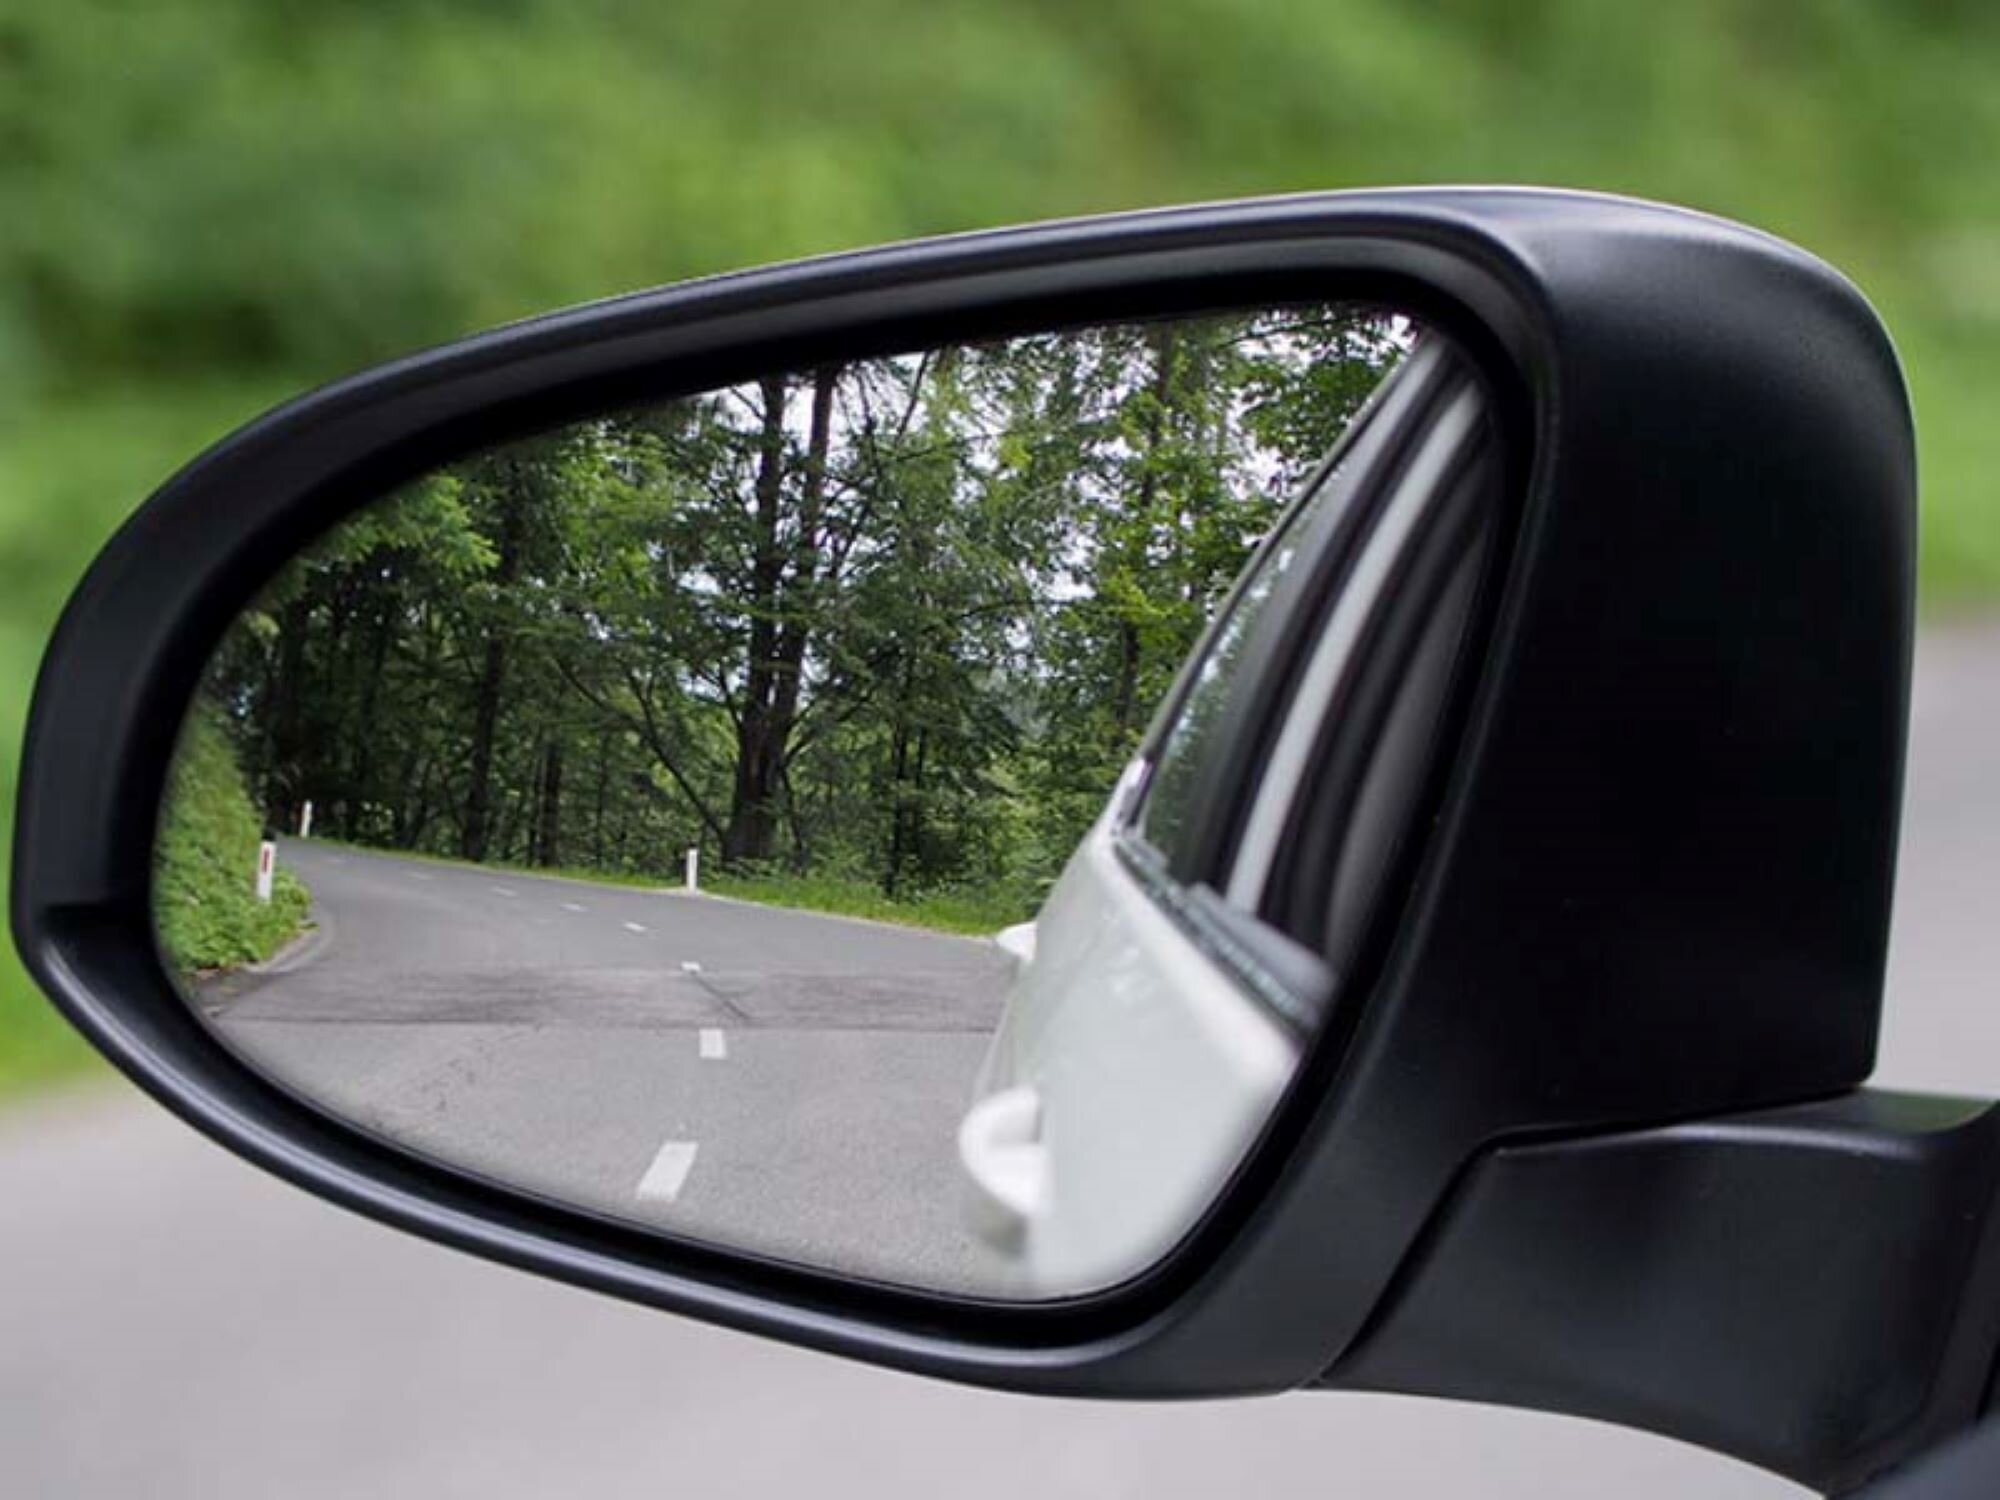 Gương chiếu hậu ô tô là quy định bắt buộc khi phương tiện tham gia giao thông.